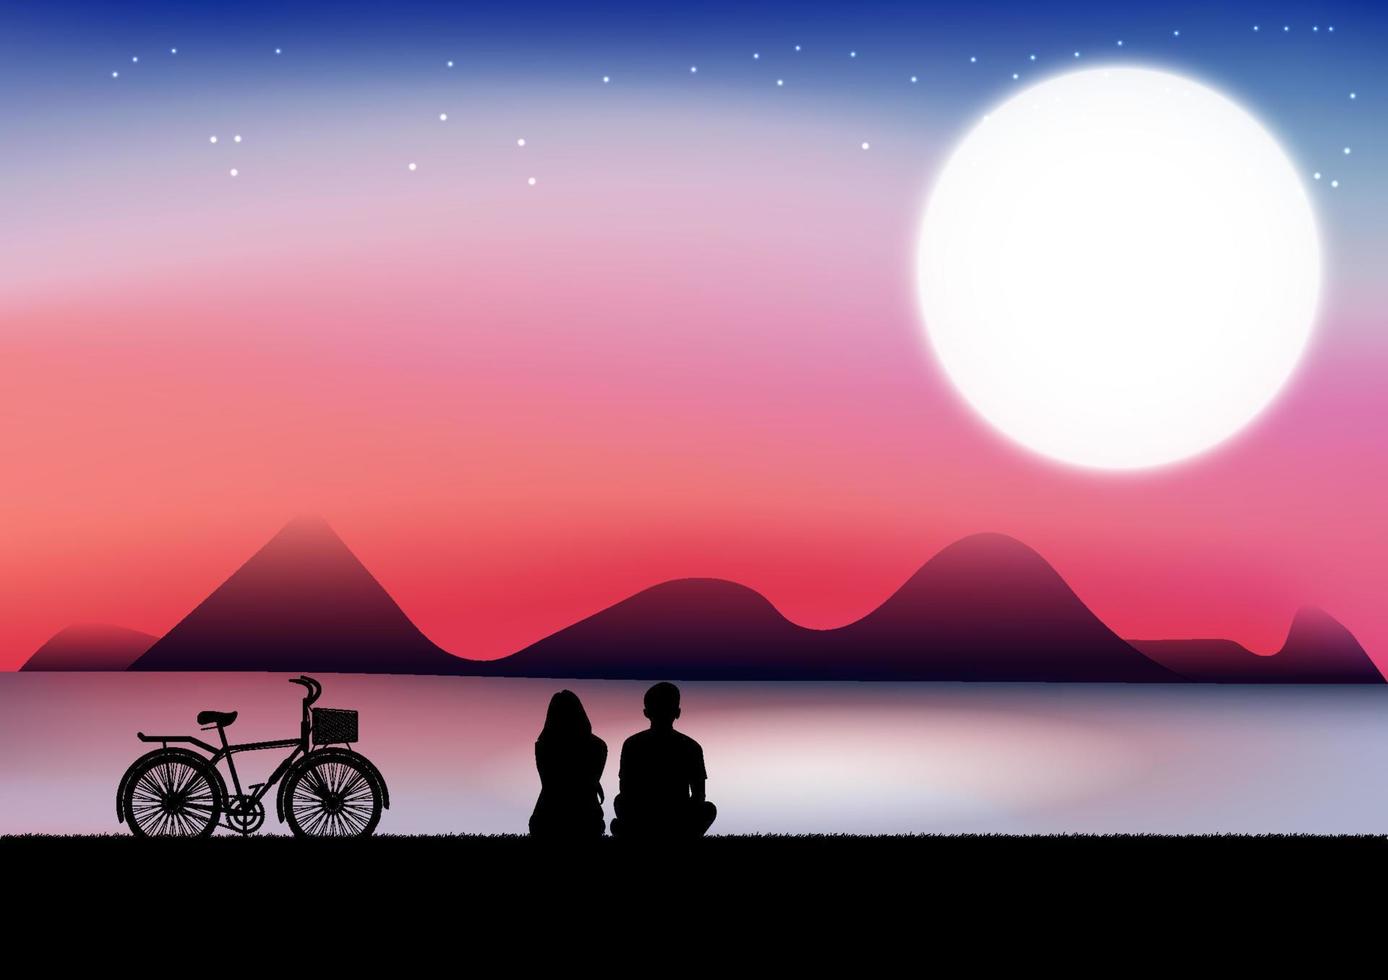 grafiek tekening een paar liefde man en vrouw zitten uitzicht natuur maan en ster met het reservoir en schemering silhouet nacht behang achtergrond vectorillustratie vector